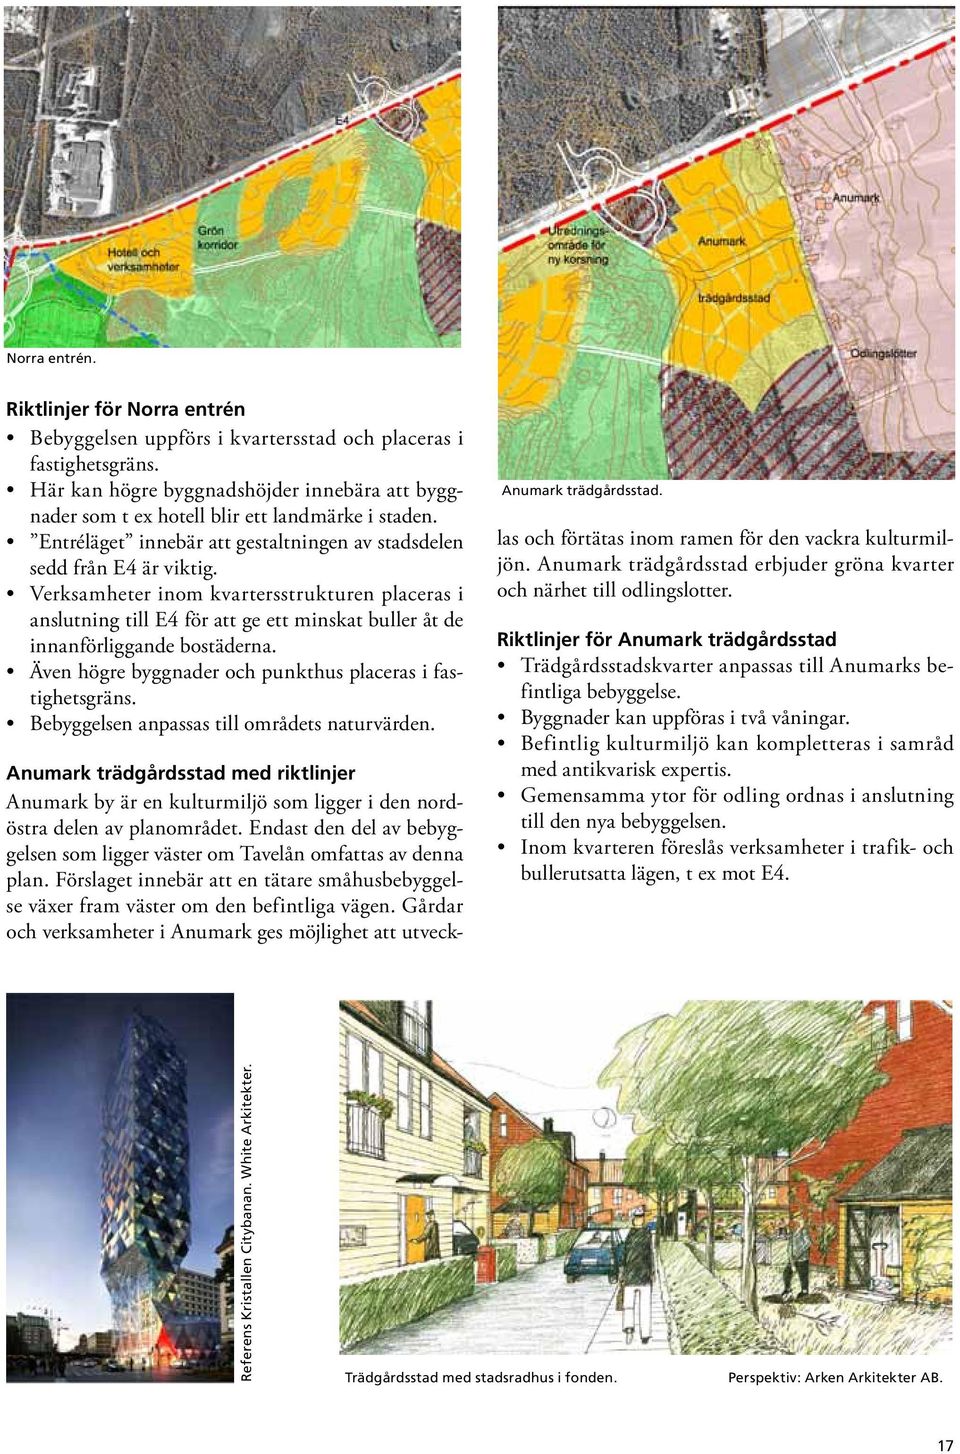 Verksamheter inom kvartersstrukturen placeras i anslutning till E4 för att ge ett minskat buller åt de innanförliggande bostäderna. Även högre byggnader och punkthus placeras i fastighetsgräns.